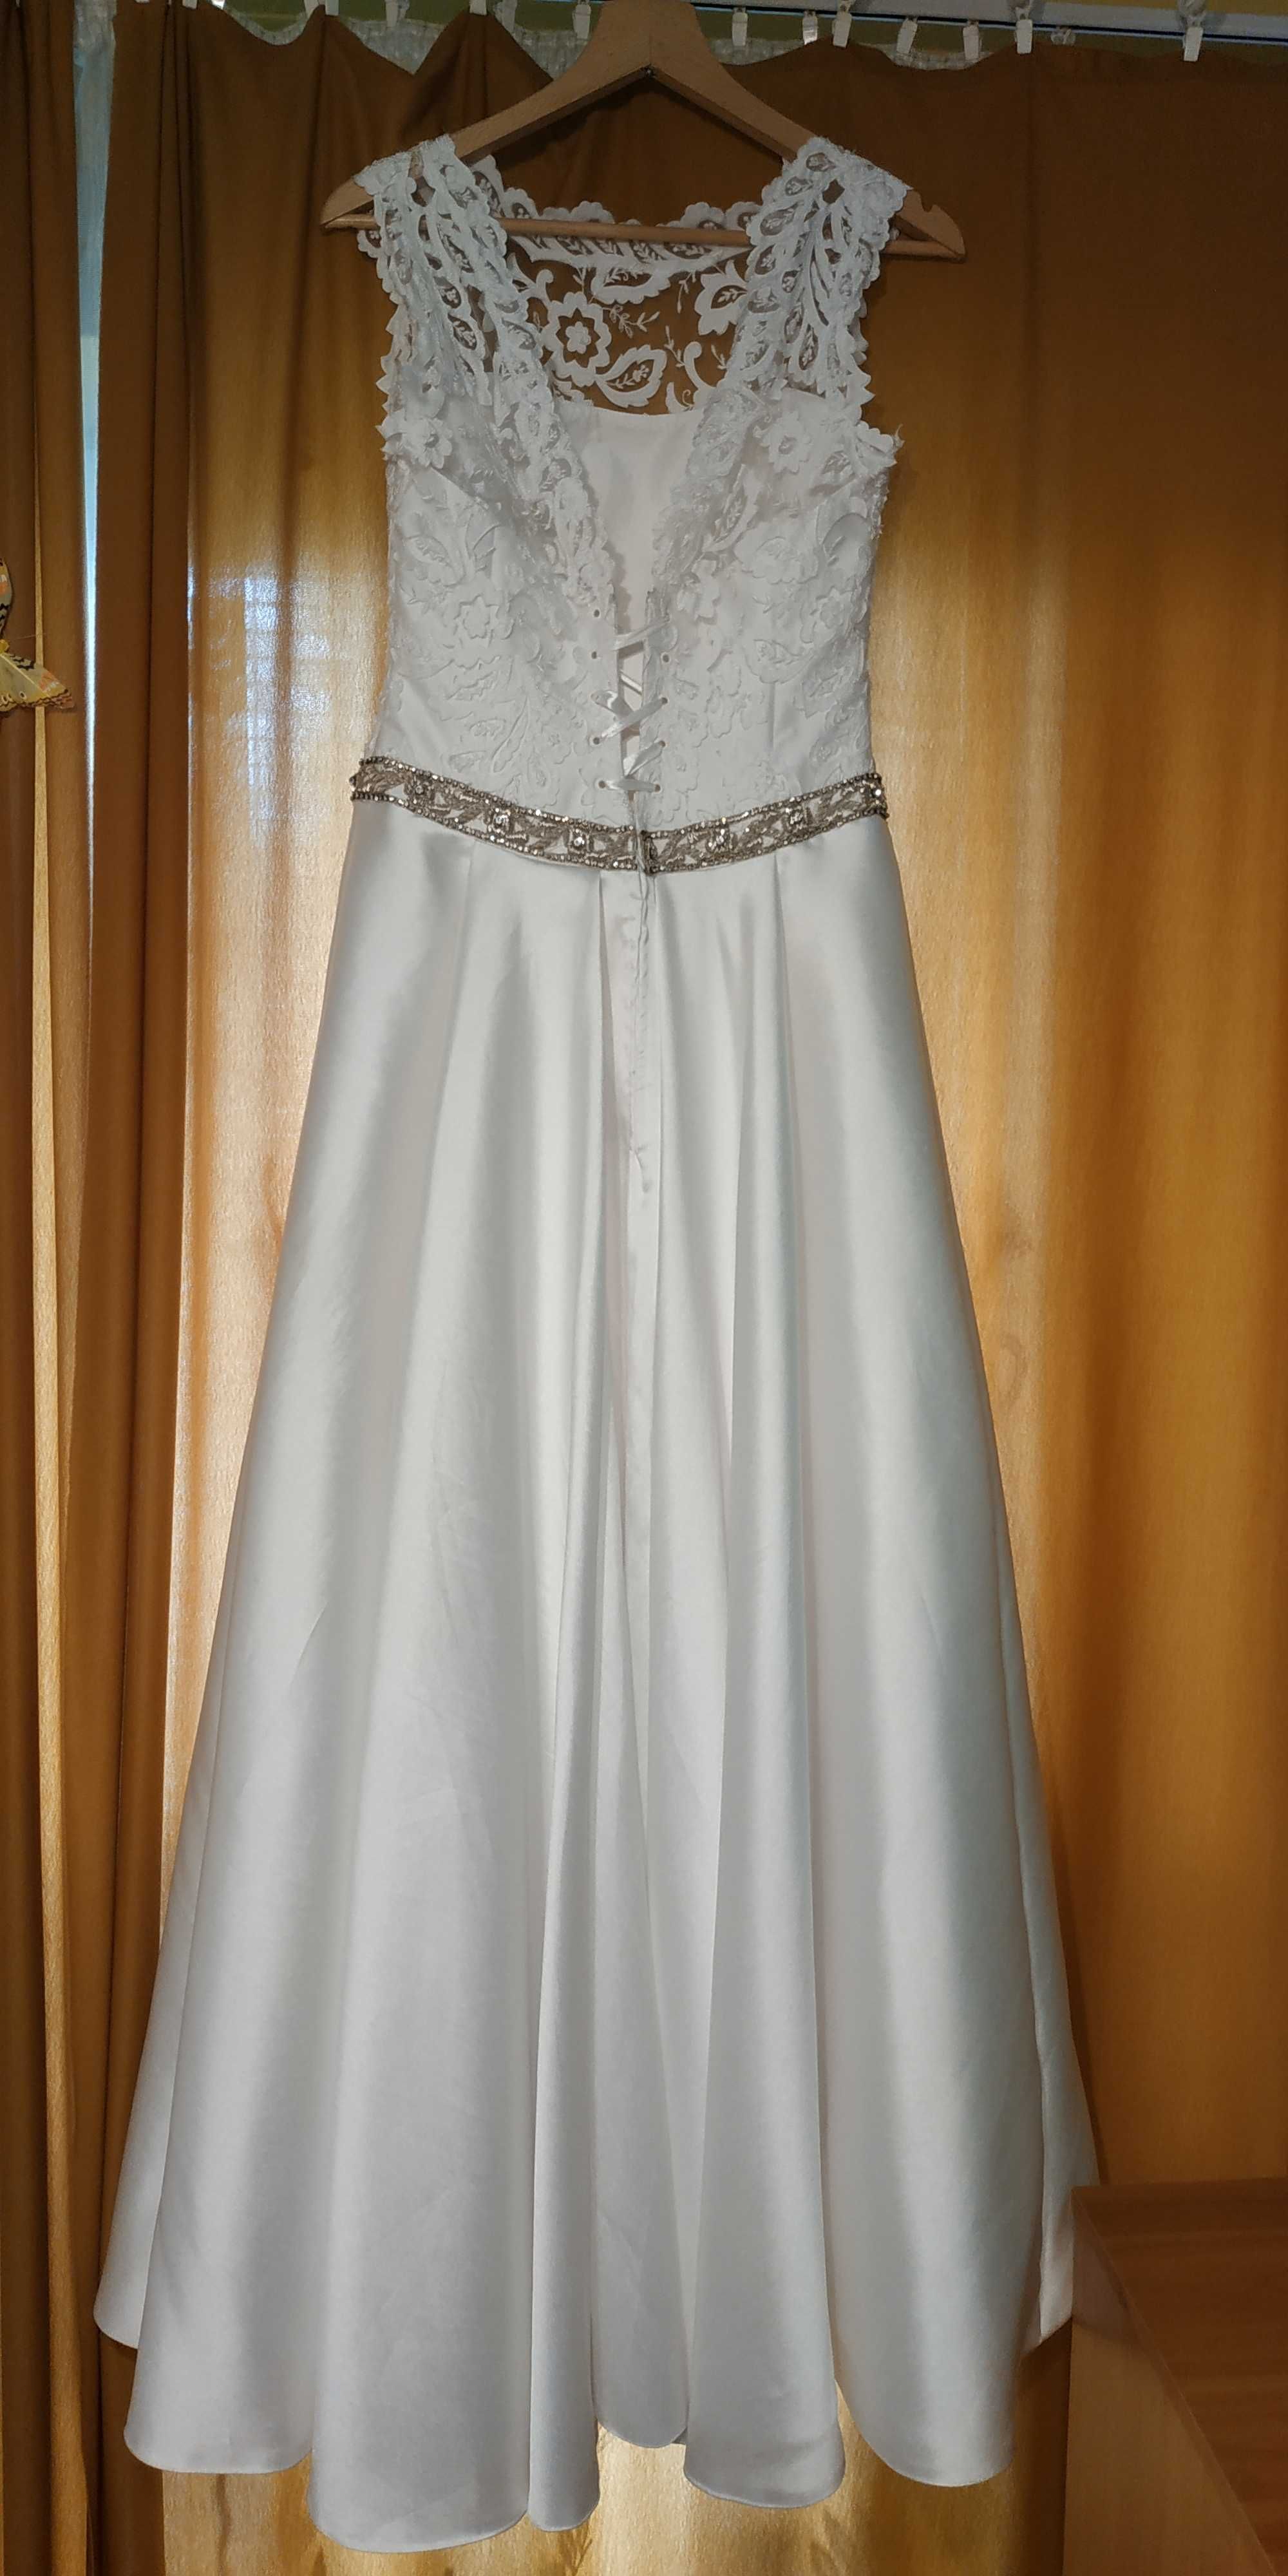 suknia ślubna biała, z koronką, rozmiar około 38